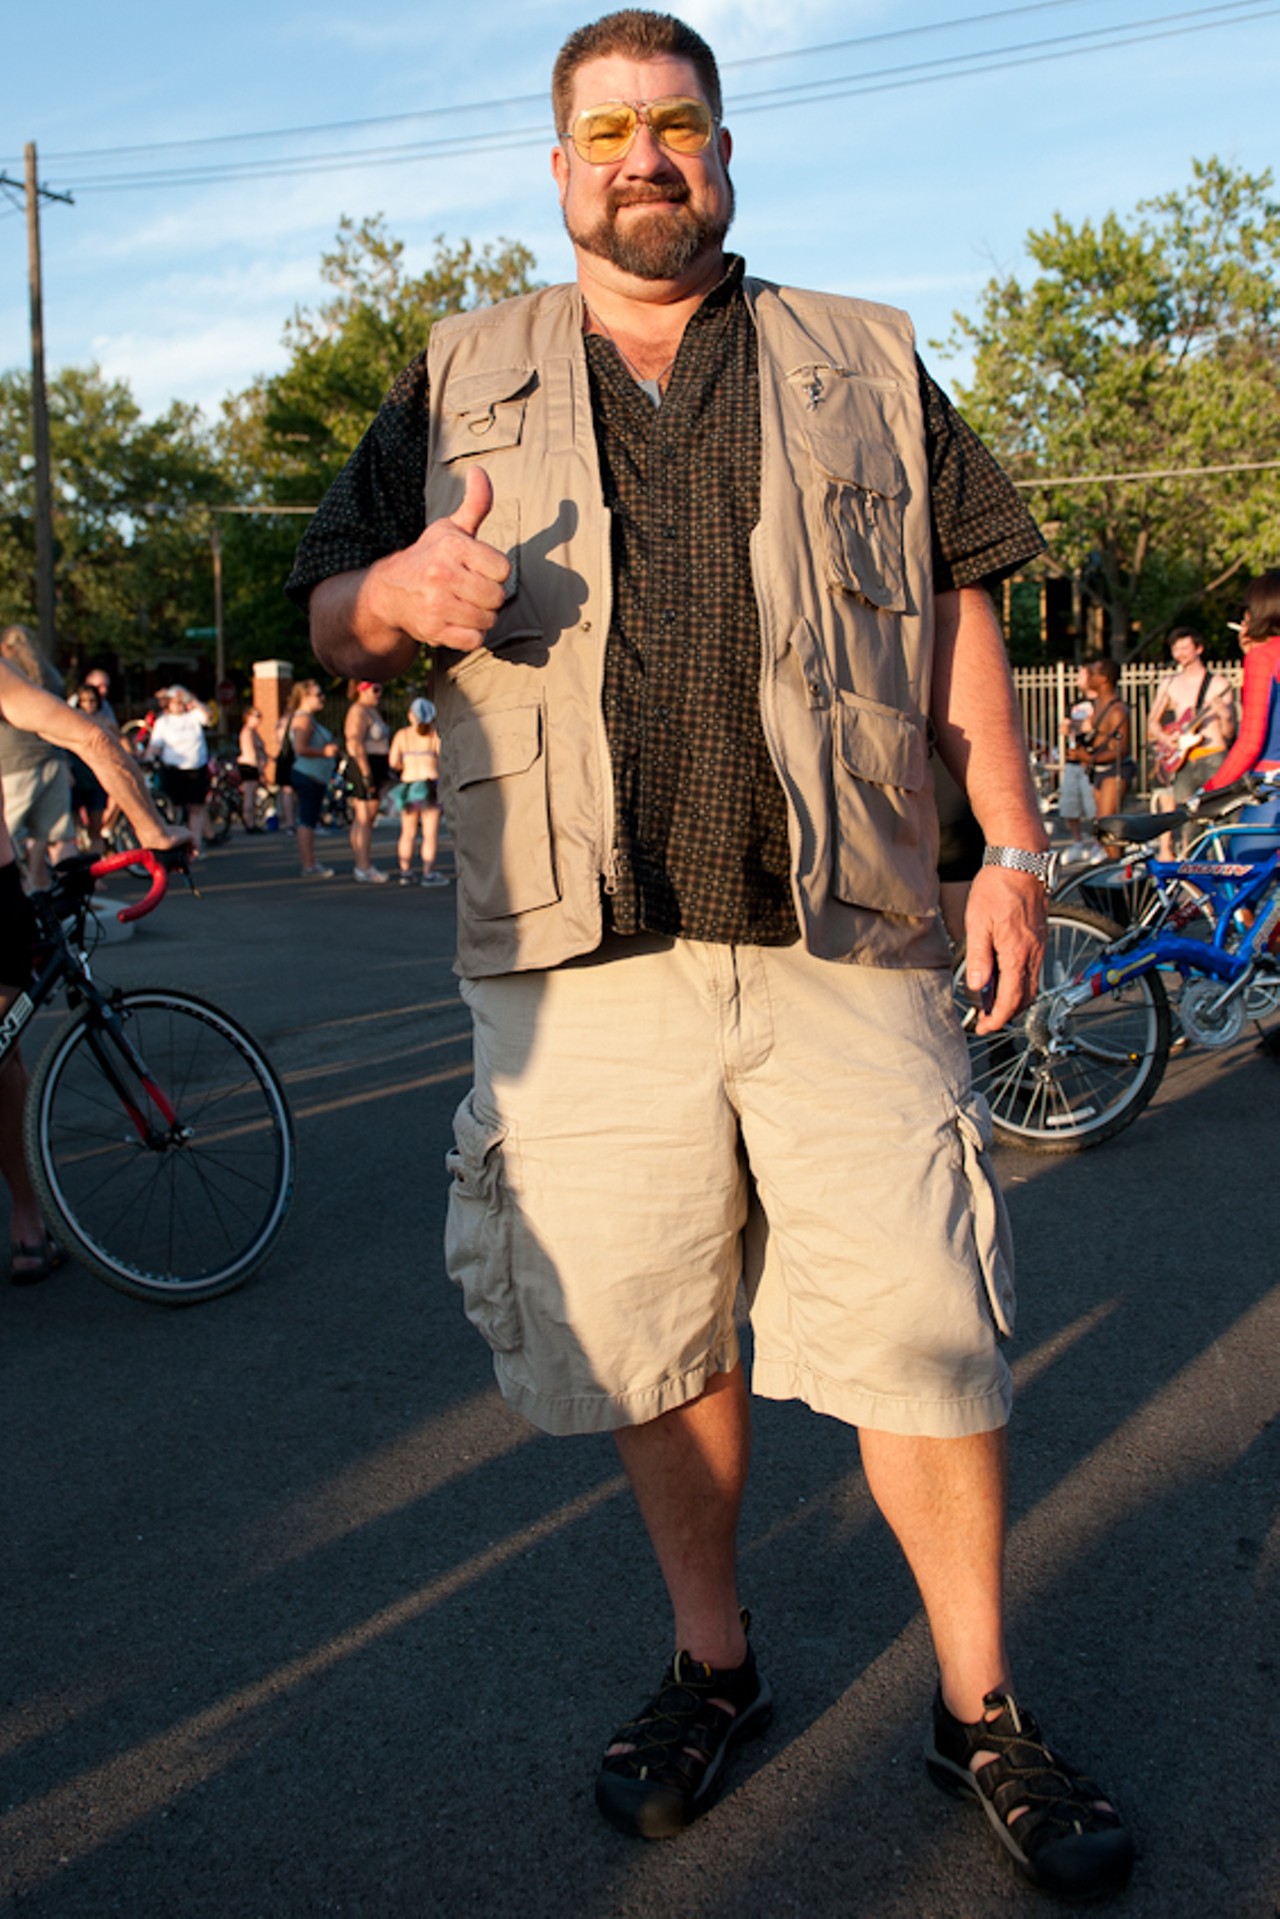 2012 St. Louis World Naked Bike Ride (NSFW)